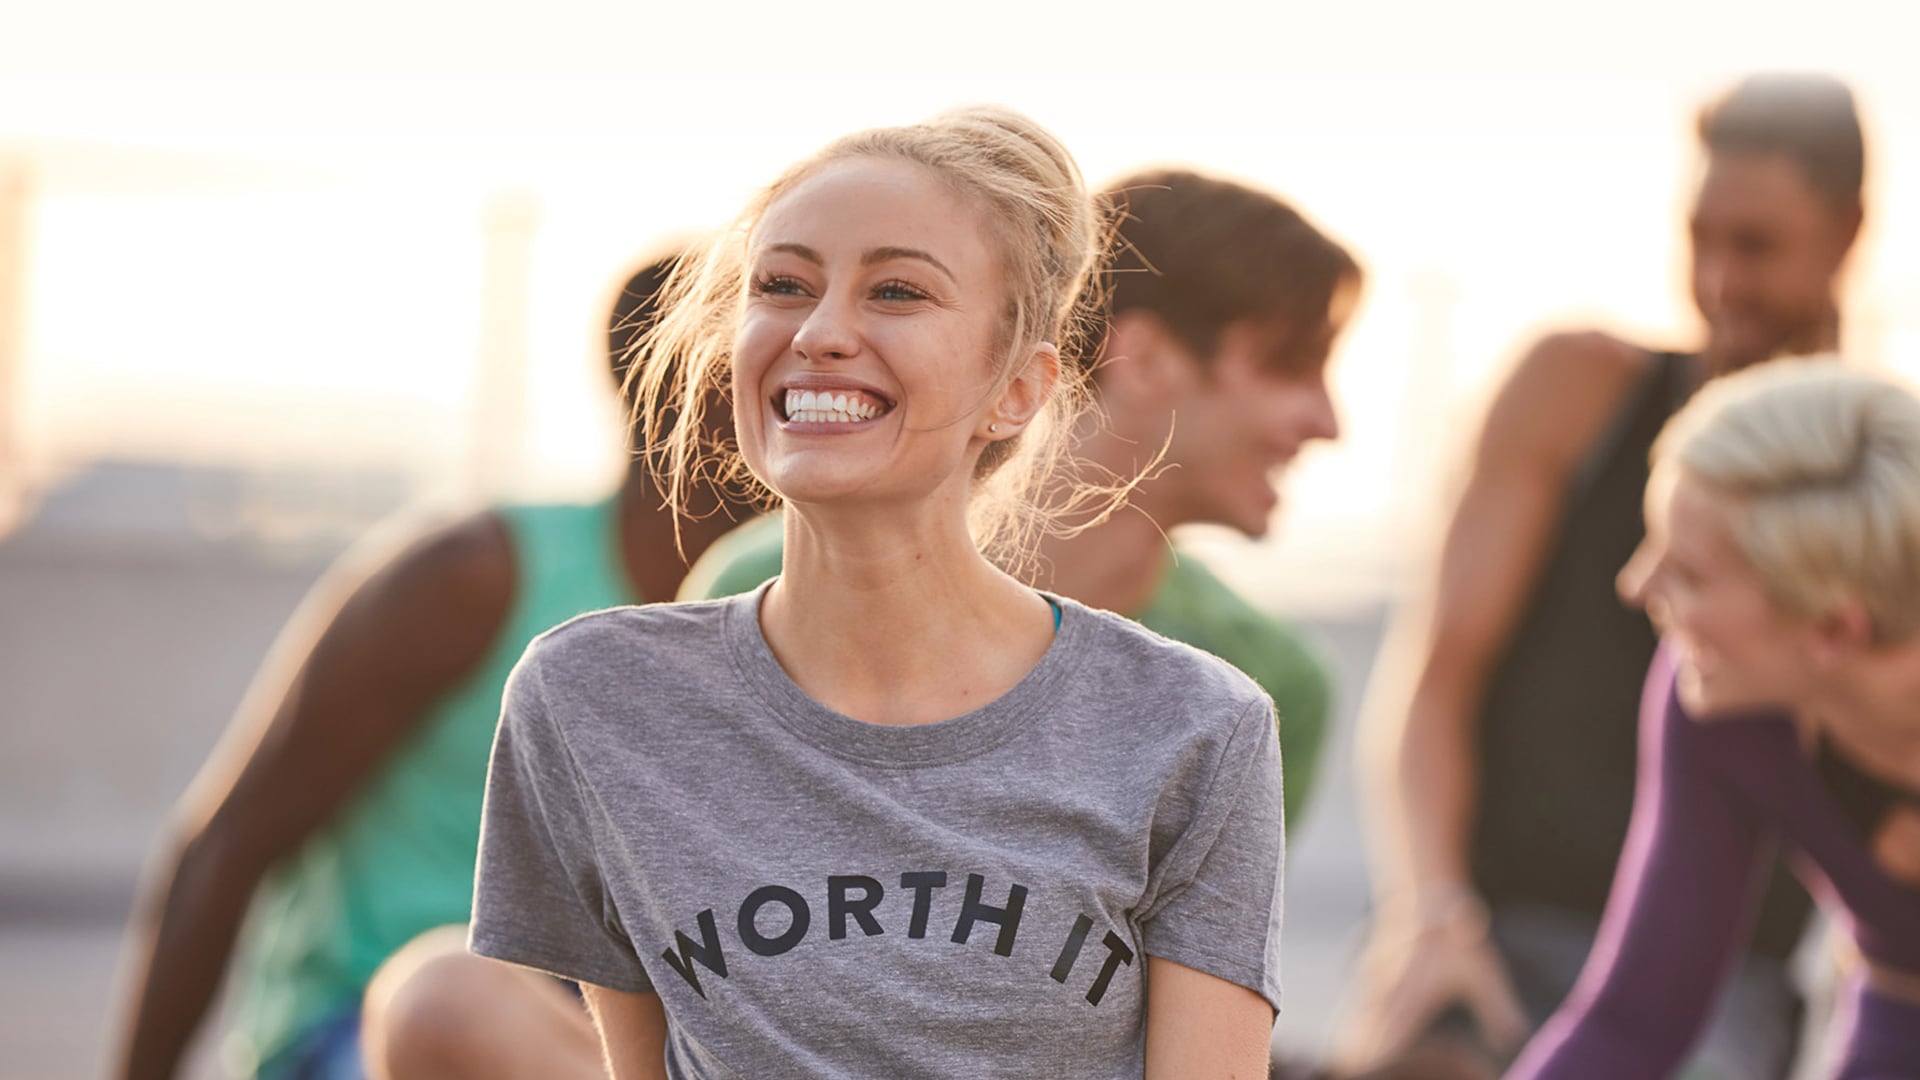 Une jeune femme portant un t-shirt gris avec écrit « Worth it » sourit tandis qu'un groupe de personnes en pleine conversation sourit et rit derrière elle.